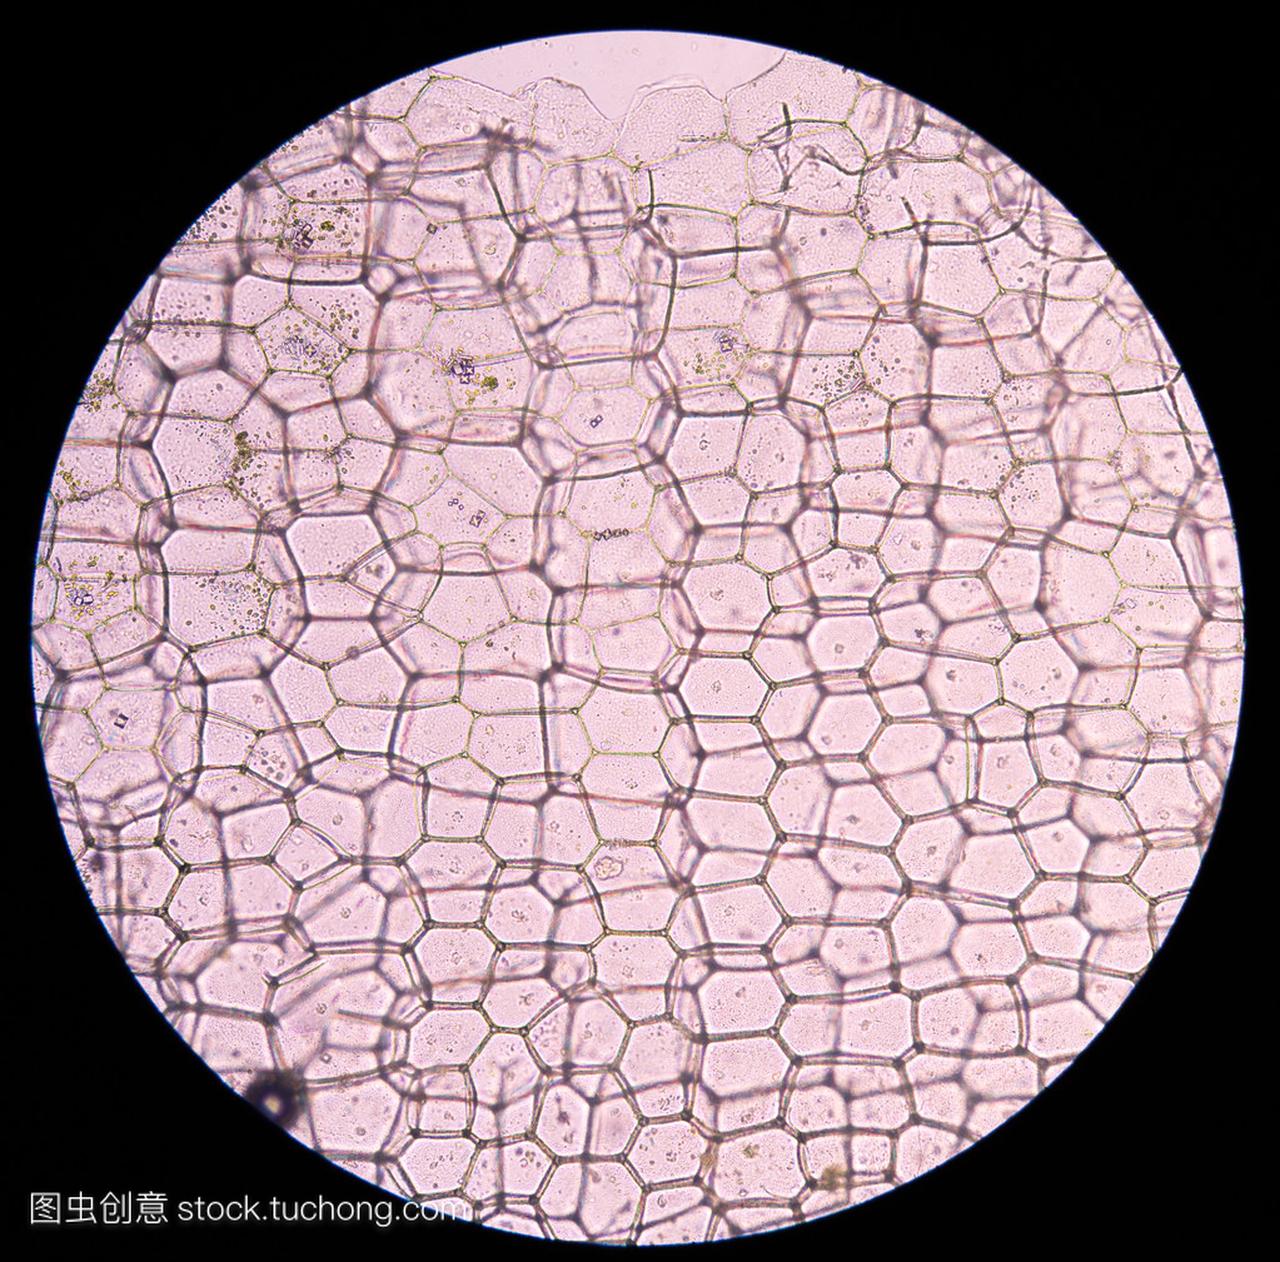 牡蛎植物细胞。显微镜下观察植物细胞